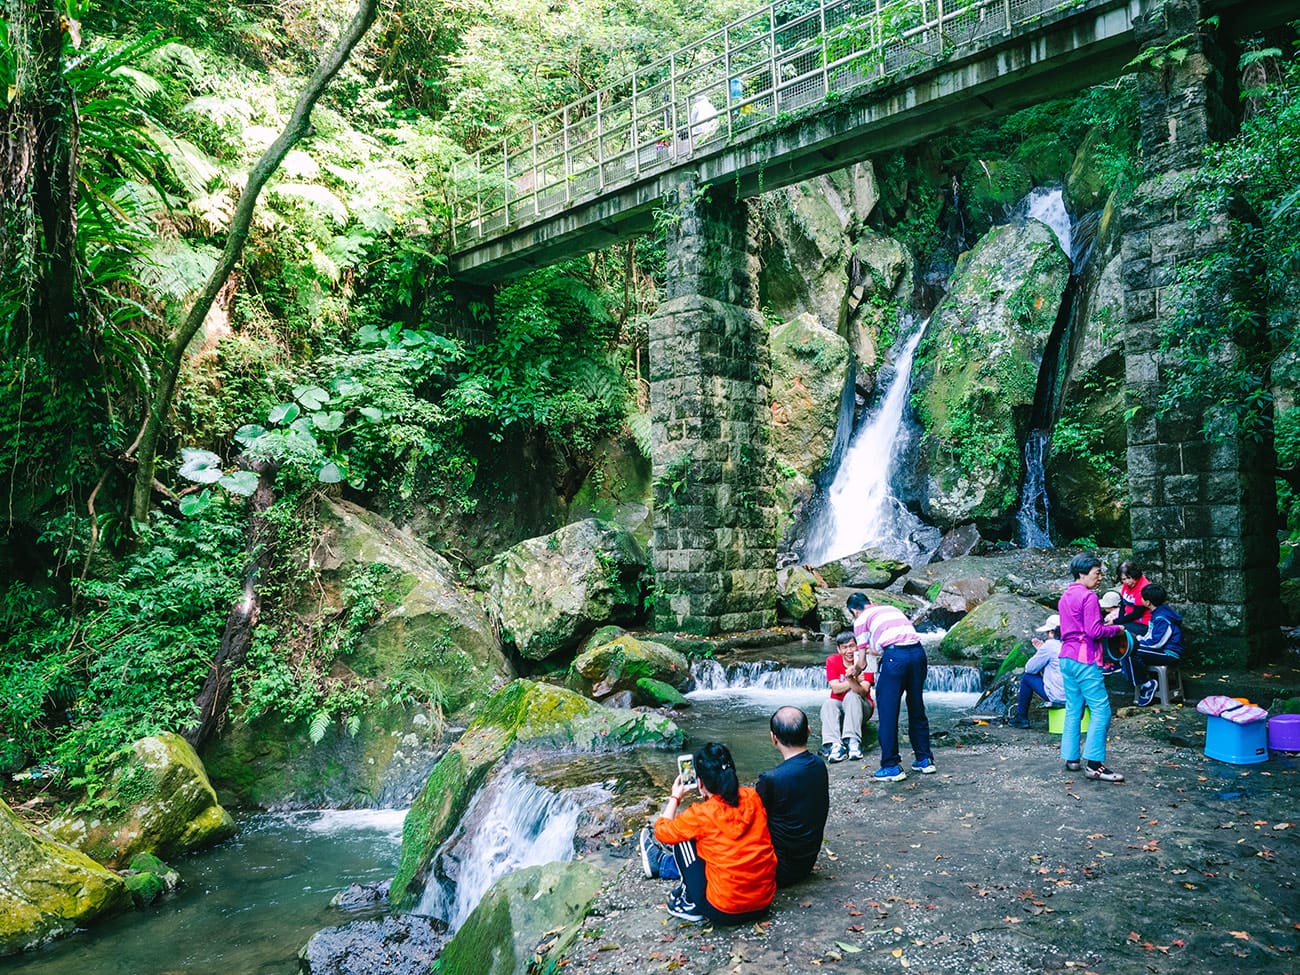 Yangmingshan - Enjoying the waterfall